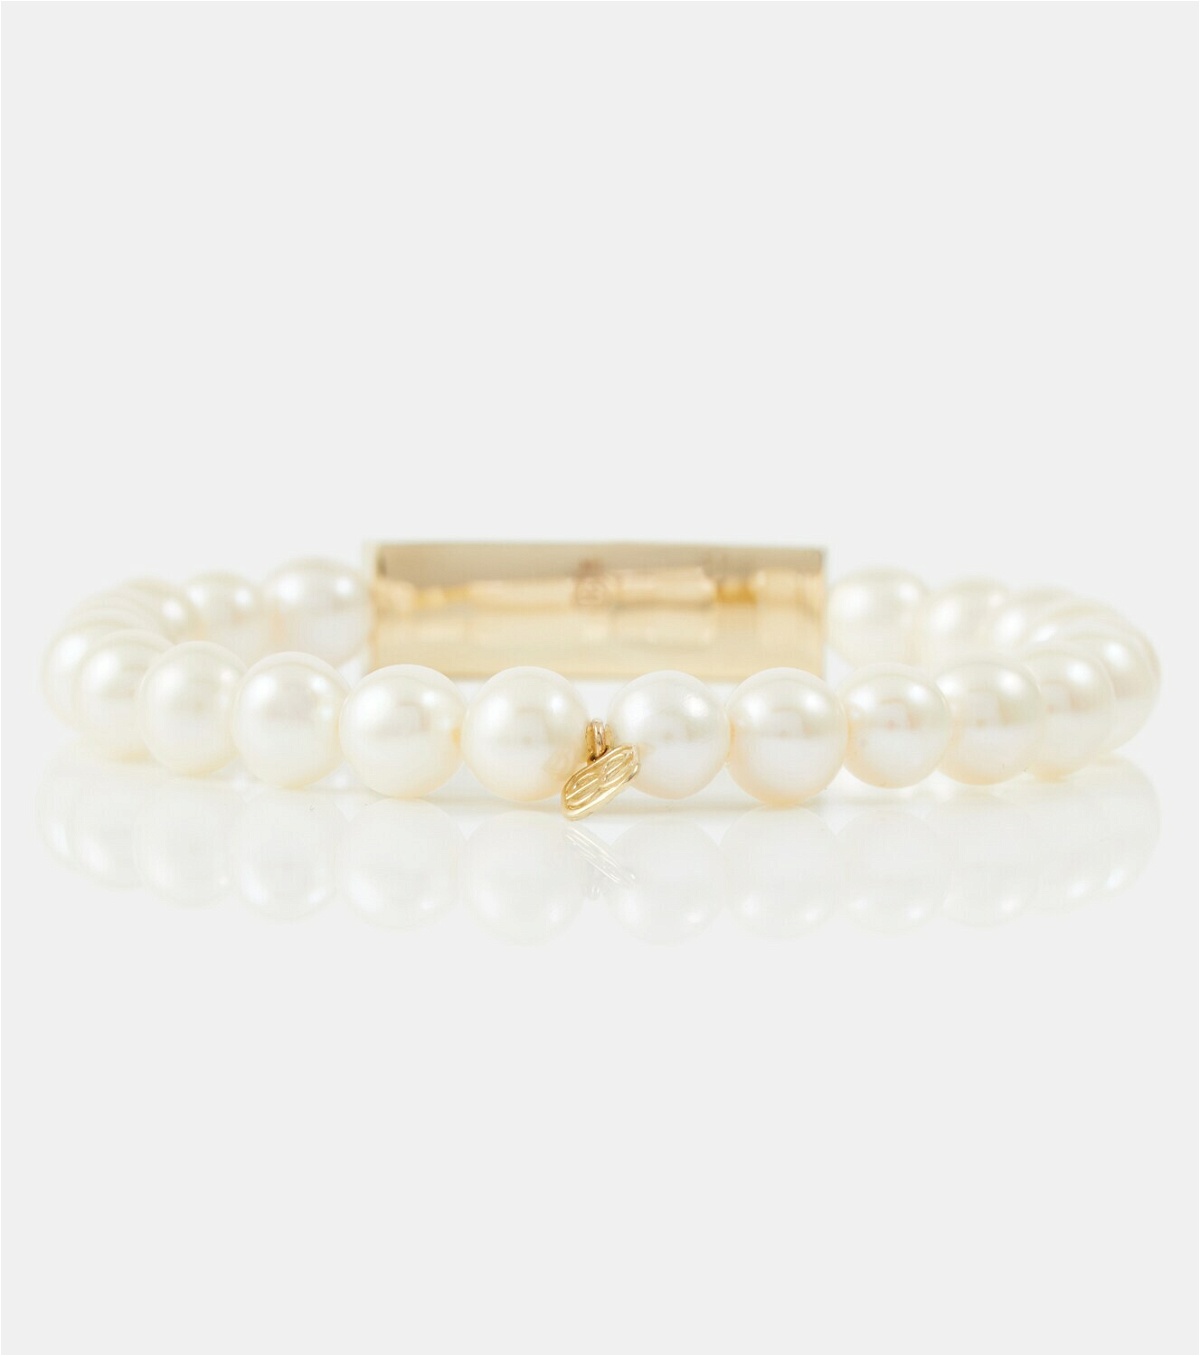 Sydney Evan 14kt gold bracelet with pearls